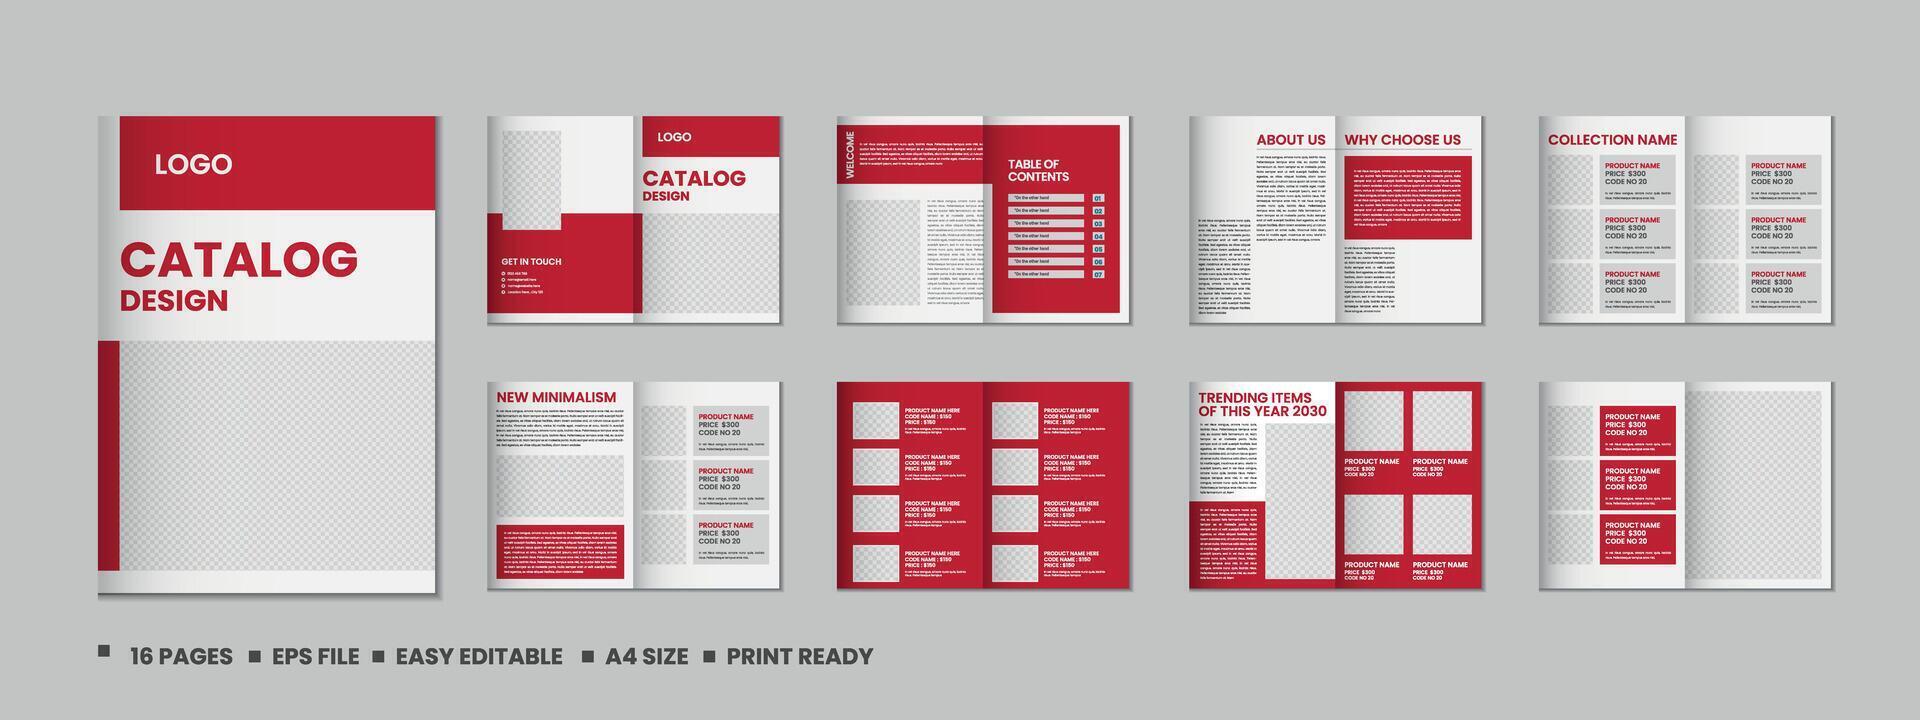 Möbel Produkt Katalog Design, Mehrere Seiten Broschüre Katalog Vorlage Design mit Attrappe, Lehrmodell, Simulation vektor